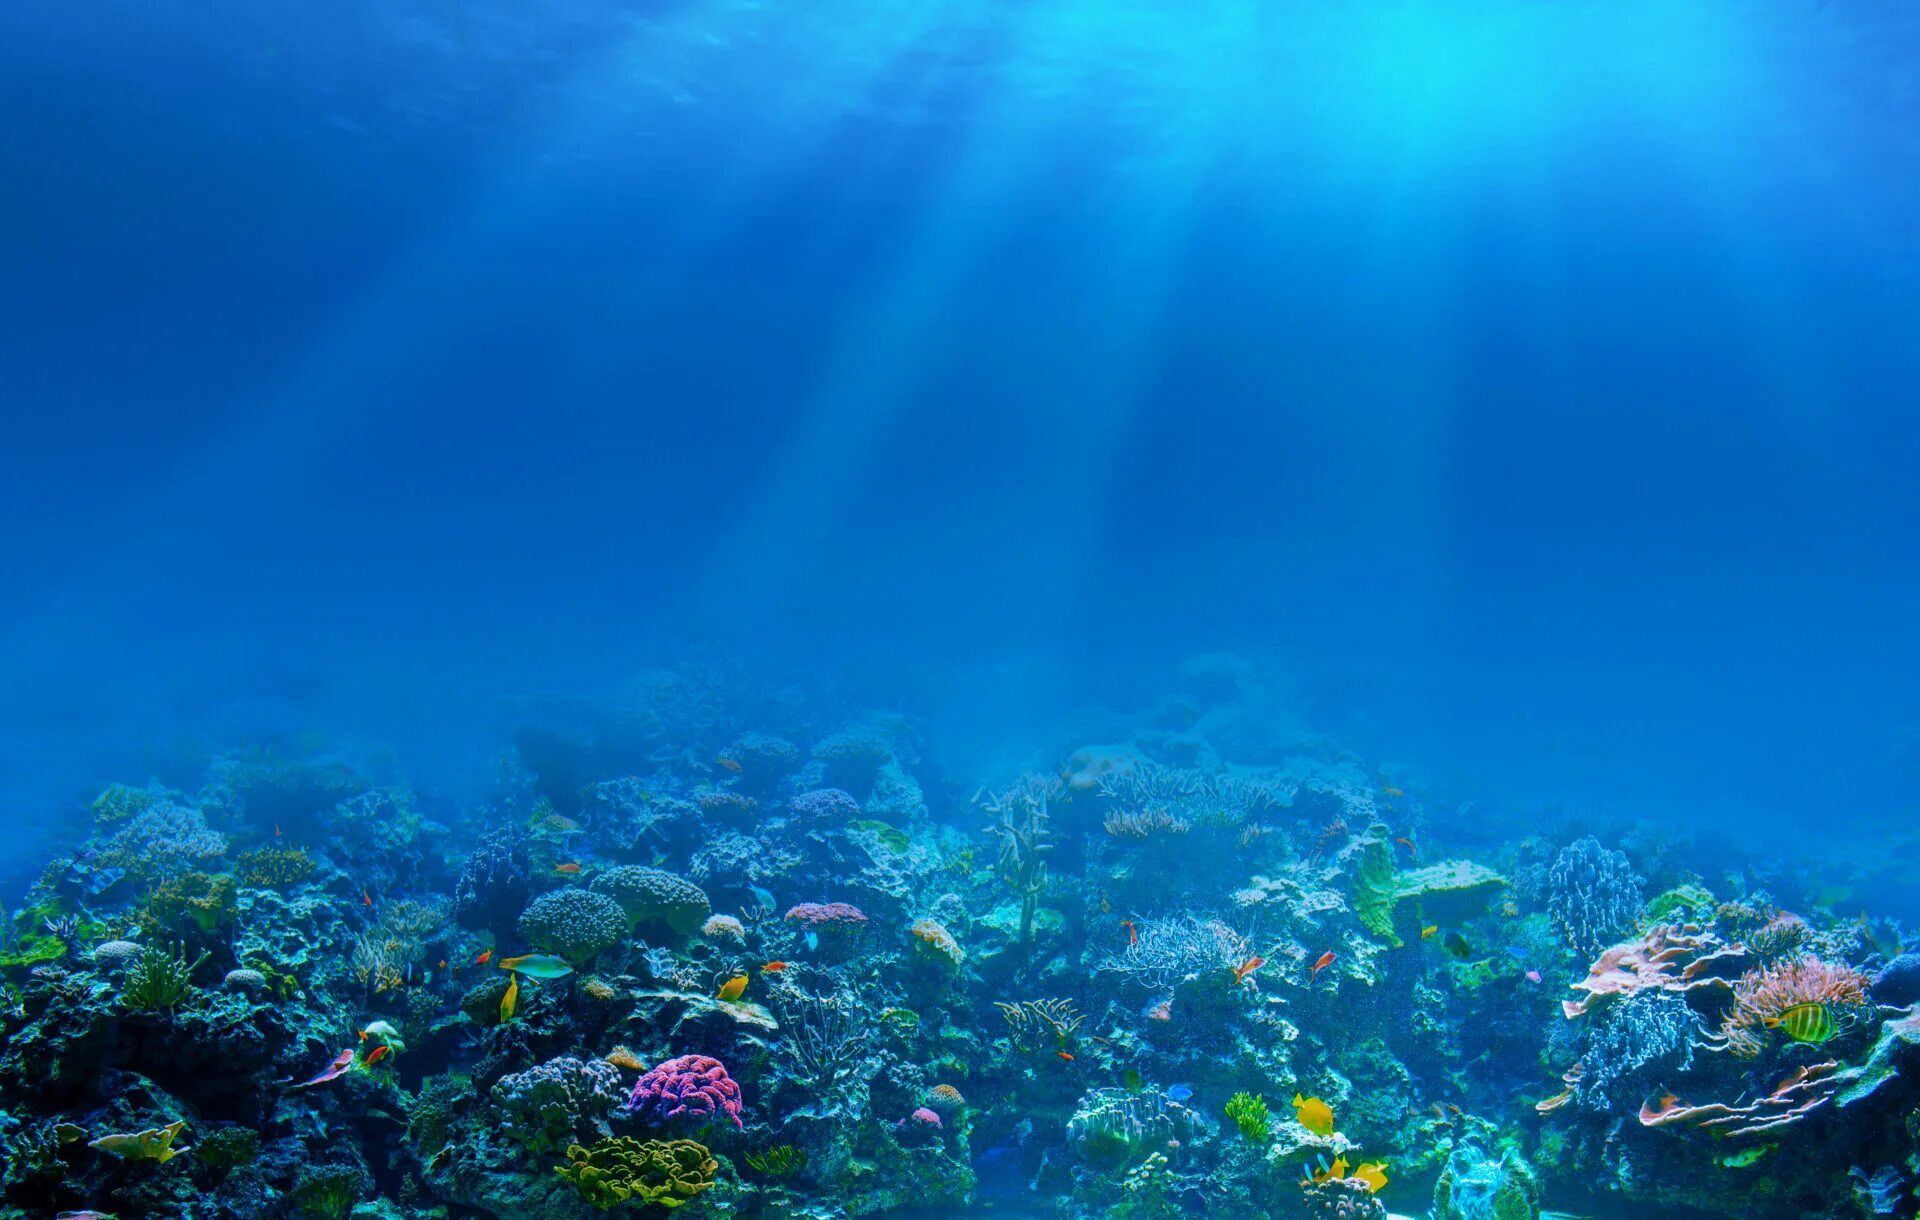 Рифы в океане. Подводный мир. Морское дно. Дно океана. Картинка на дне моря